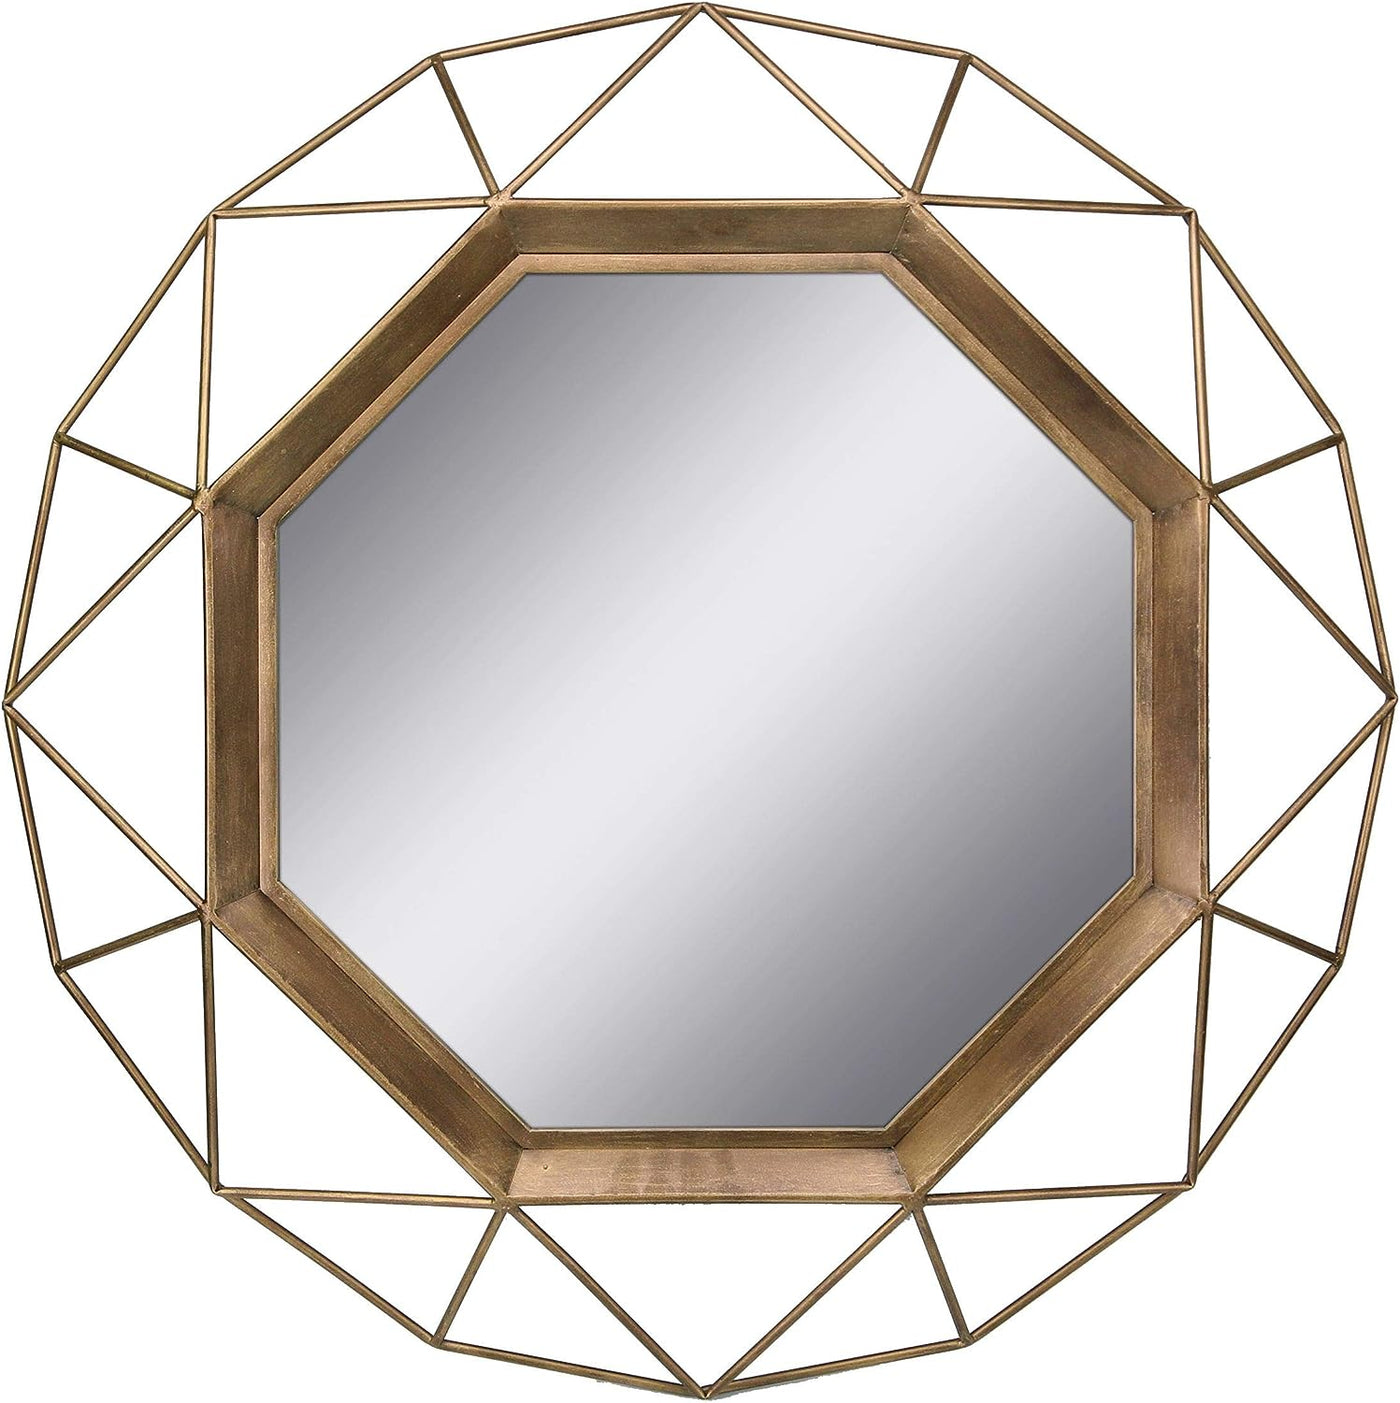 Stonebriar SB-6137A Gold Geometric Wall Mirror, 30 x 30 - $50